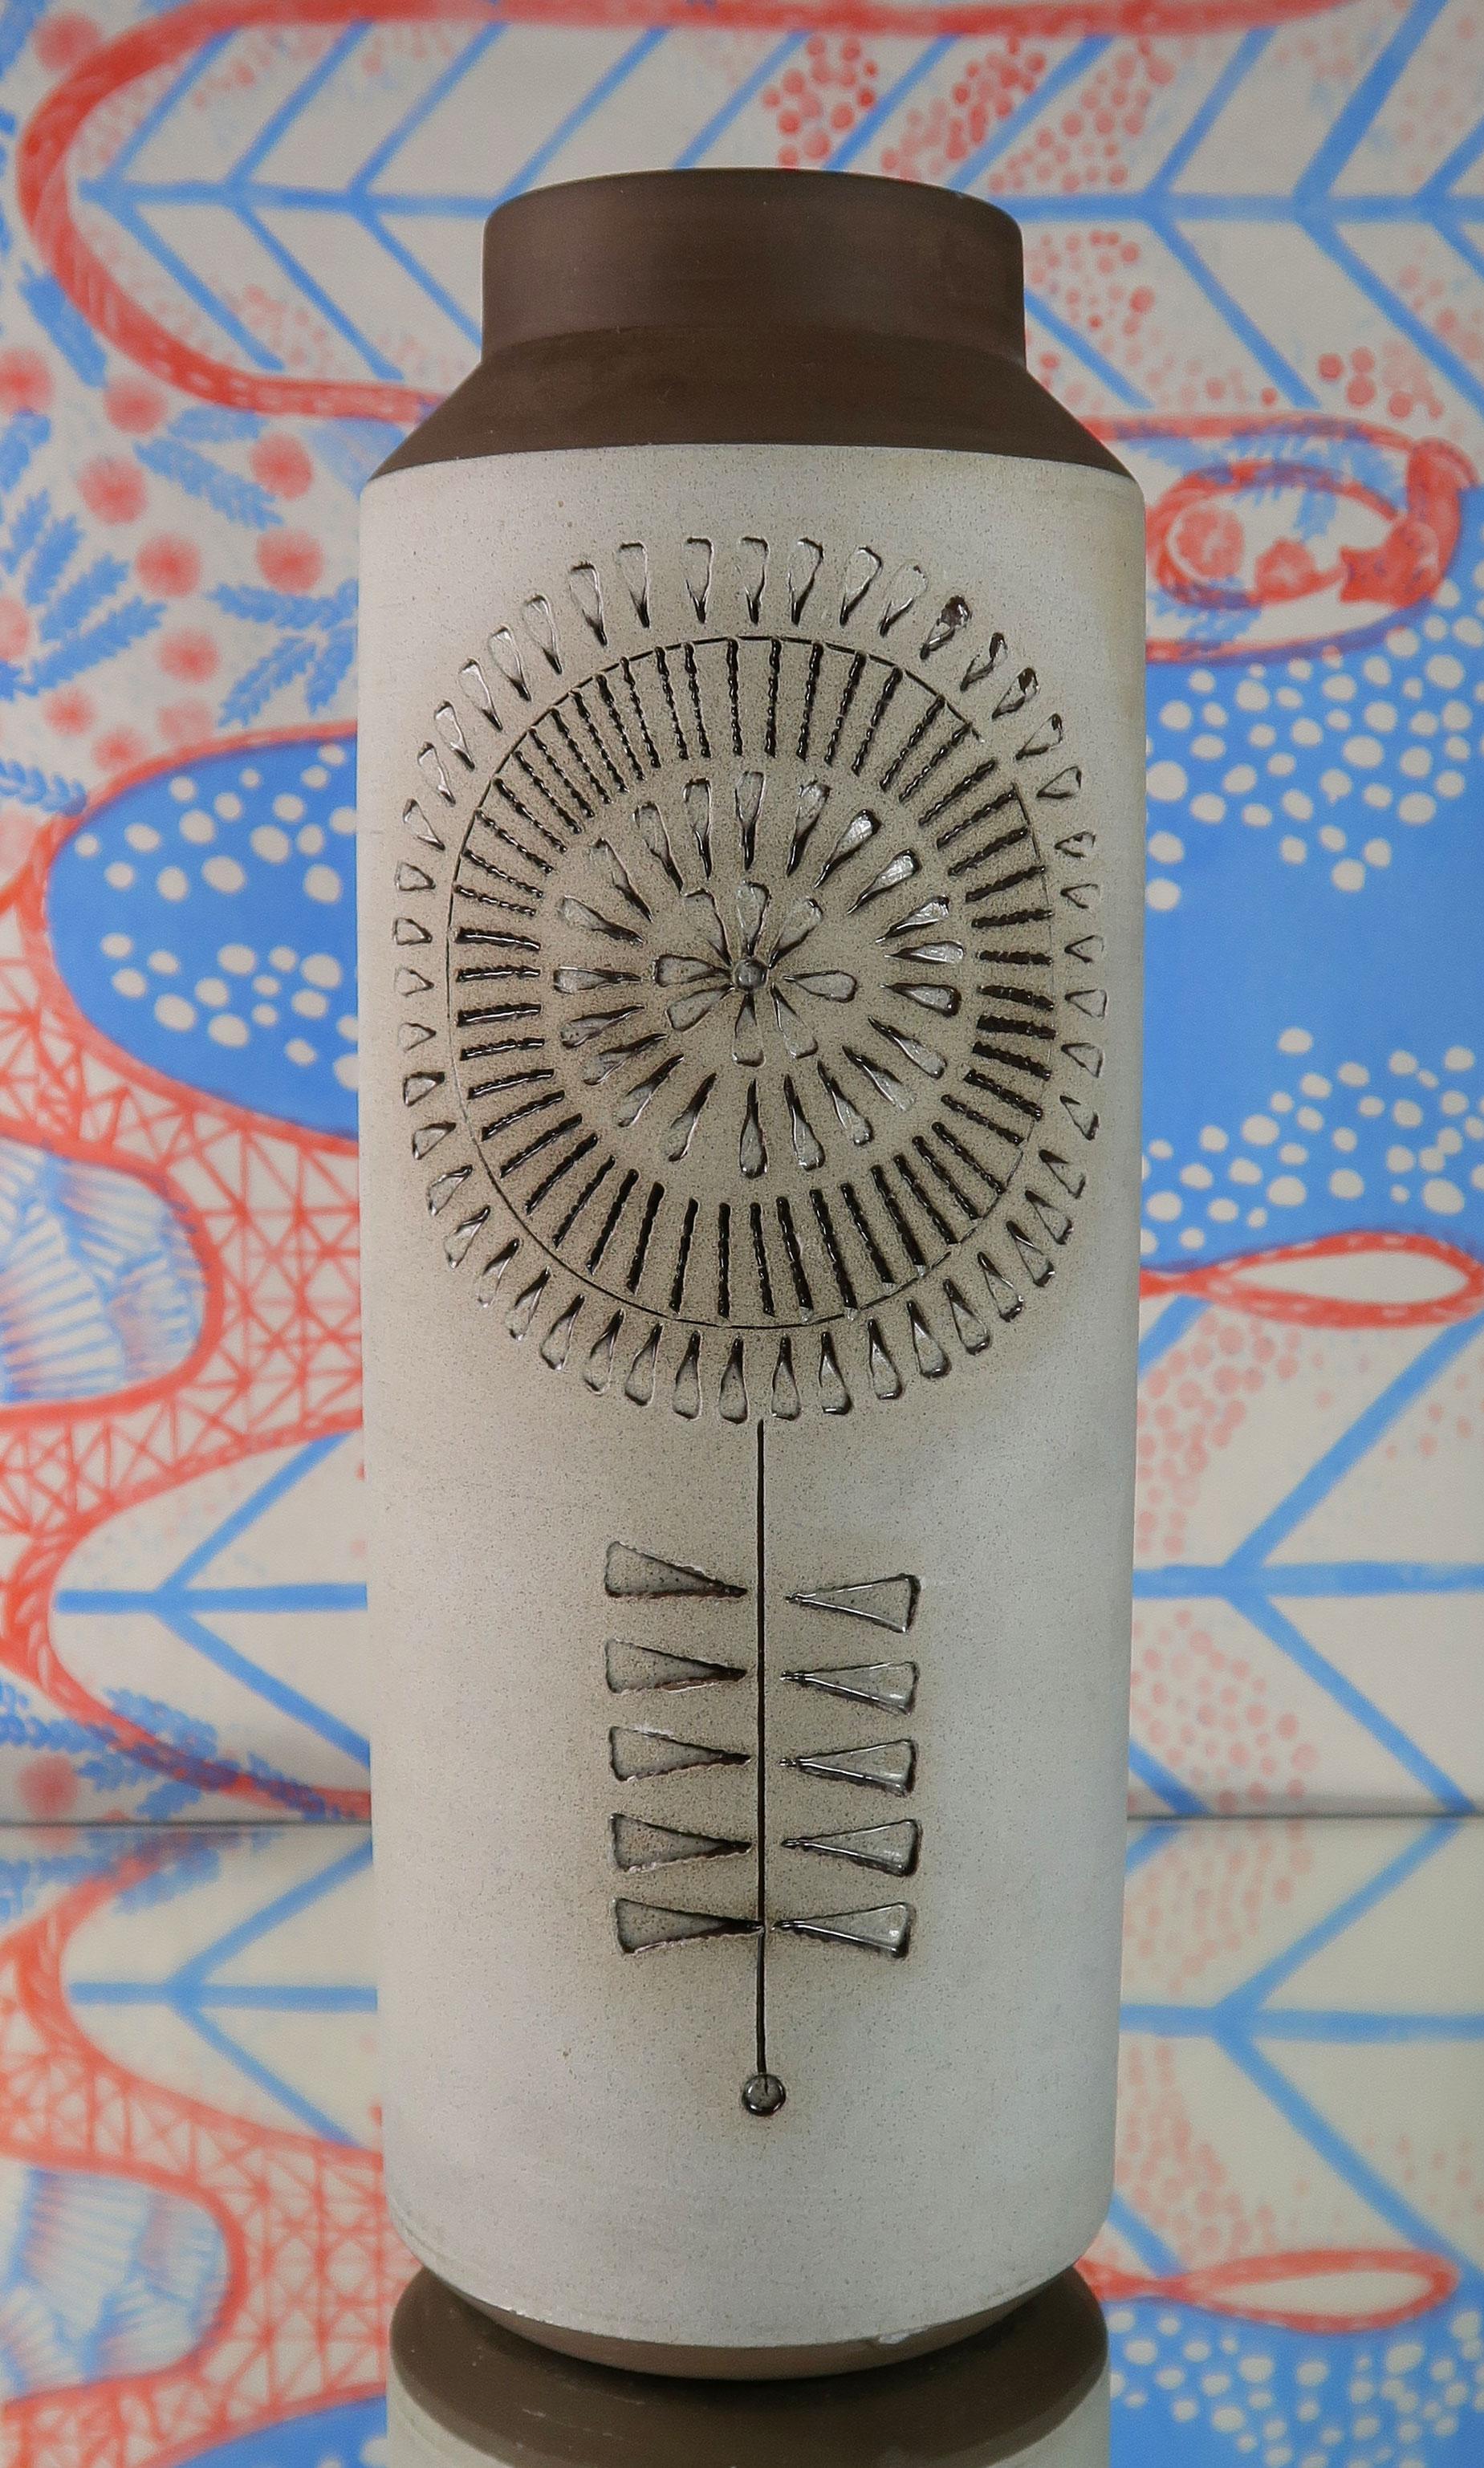 Grand vase cylindrique en céramique rustique suédoise de style moderne du milieu du siècle, avec des motifs graphiques complexes en relief, sculptés à la main. Fabriqué par Alingsås Keramik dans la petite ville suédoise d'Alingsås dans les années